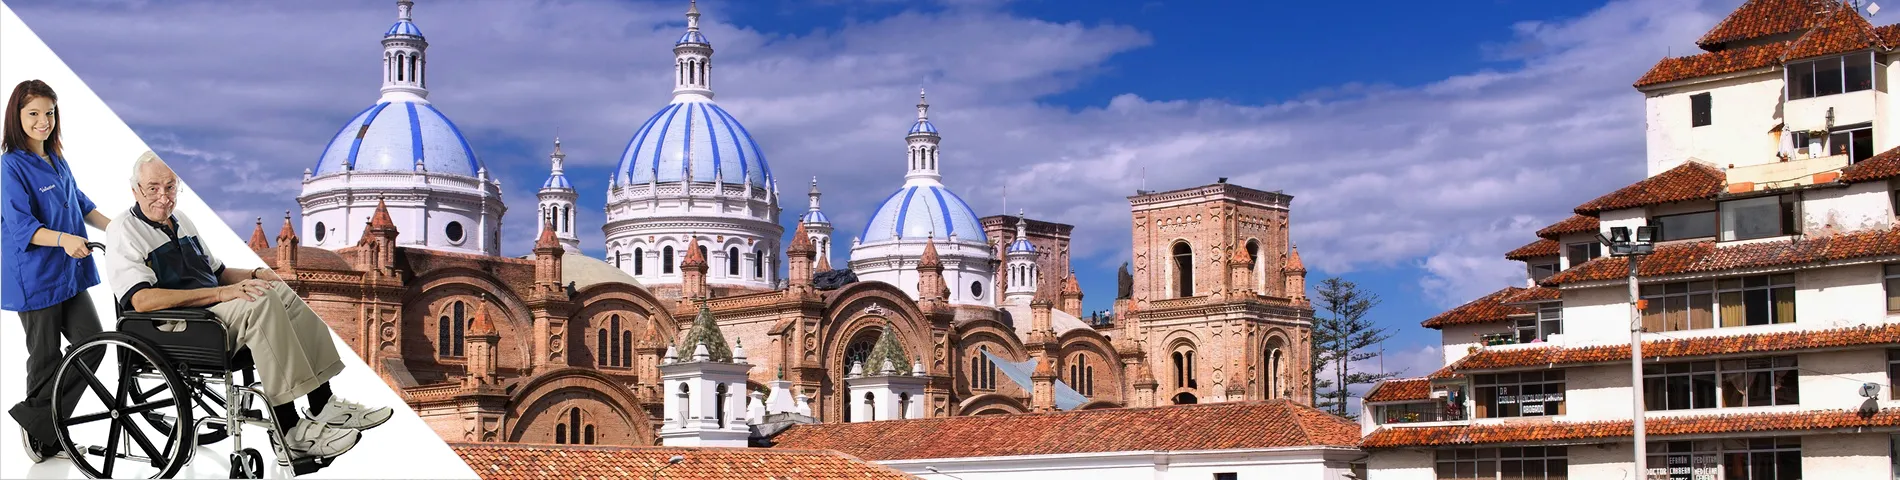 Cuenca - Španělština a Dobrovolnictví